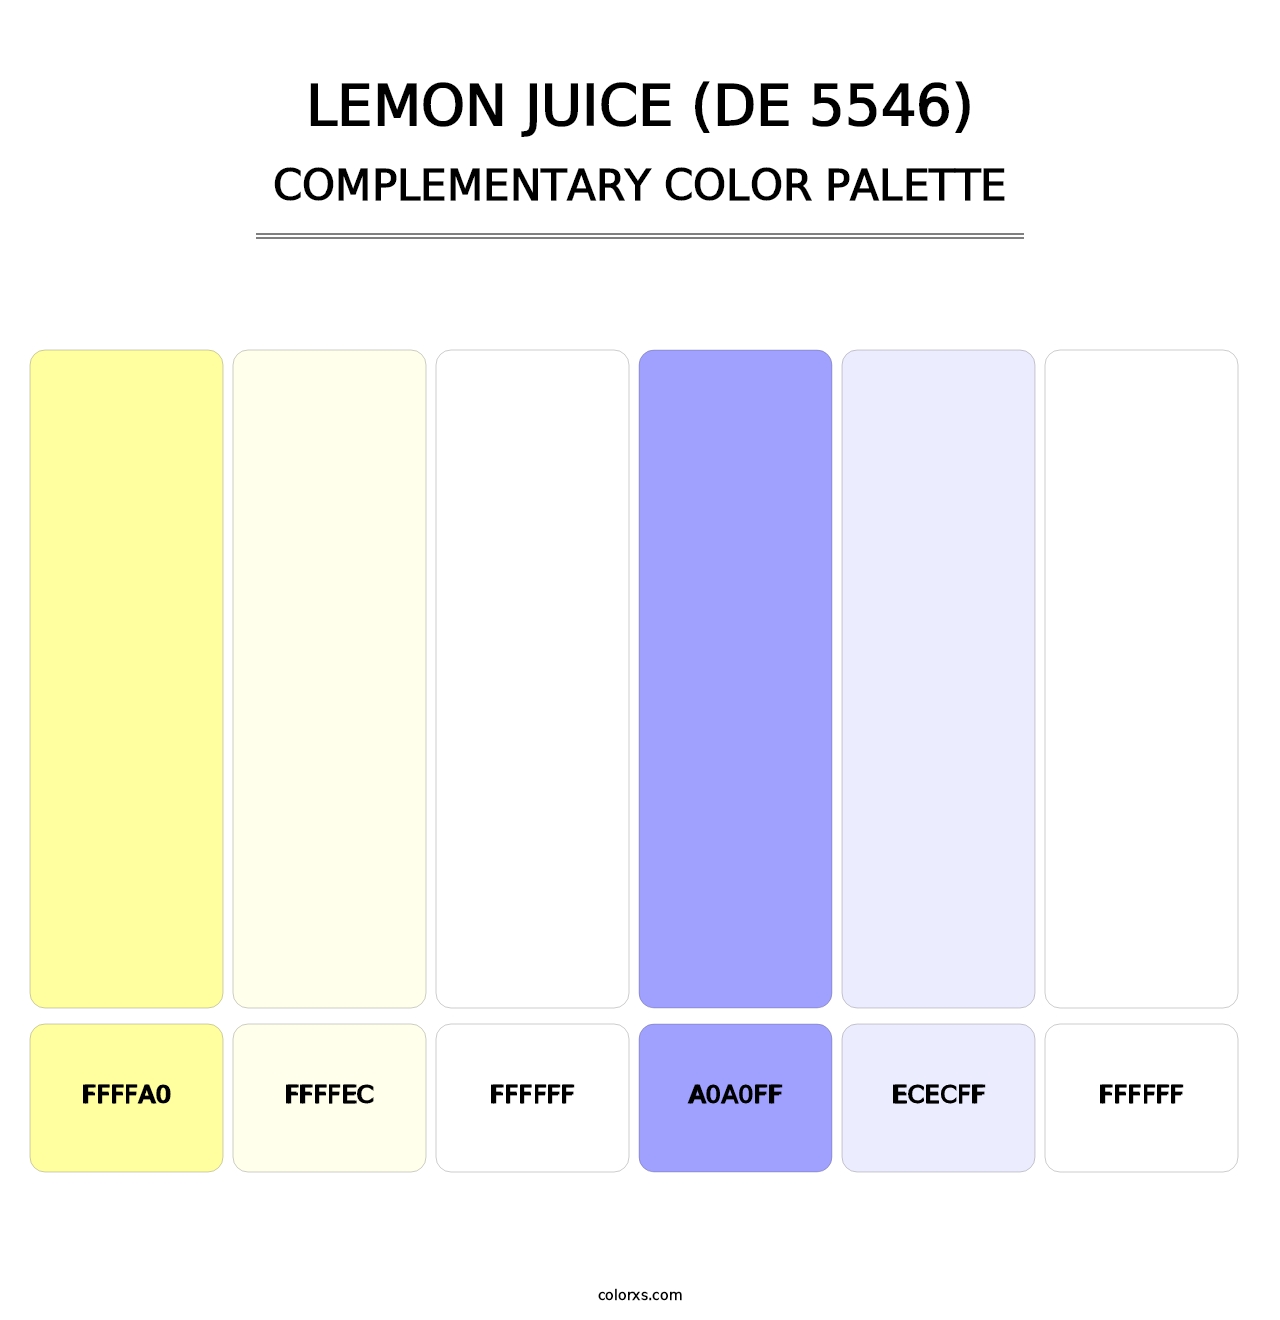 Lemon Juice (DE 5546) - Complementary Color Palette